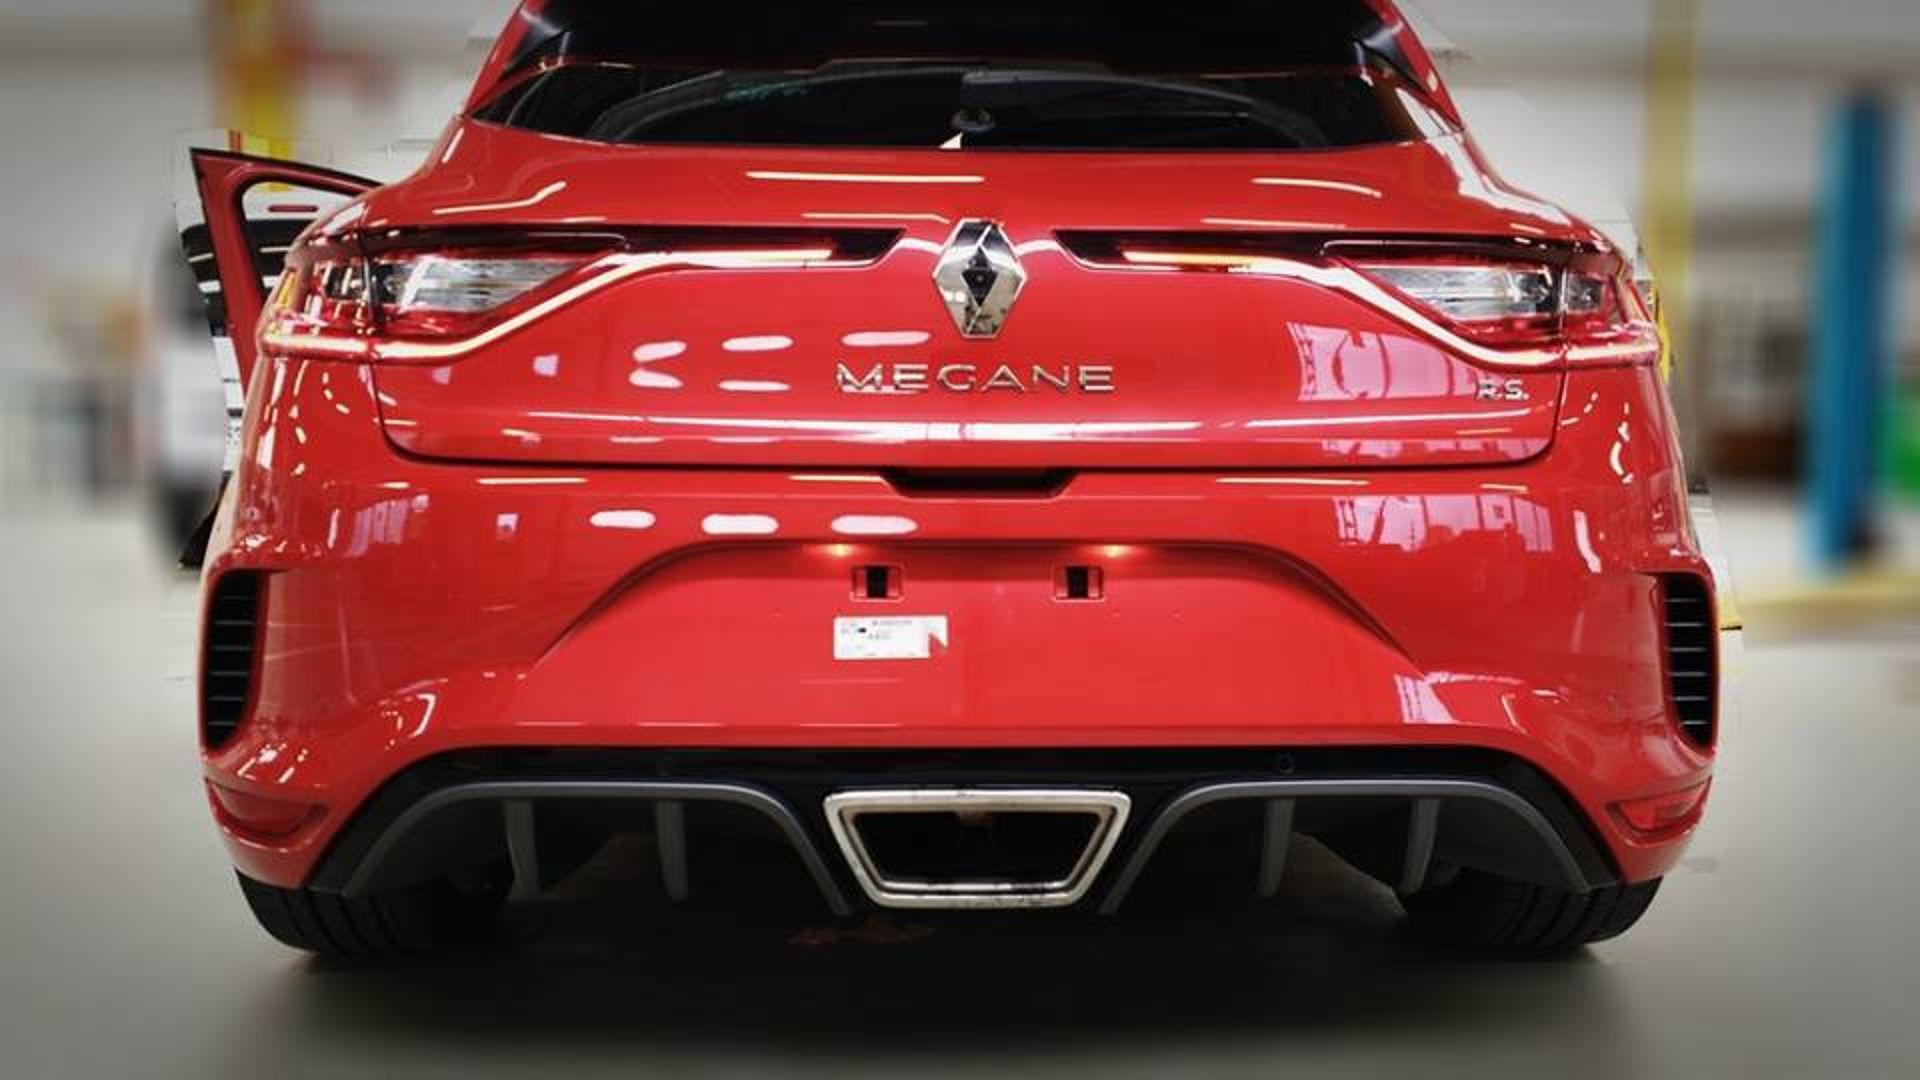 رينو ميجان RS الجديدة عالية الأداء تسرب صورها بفرنسا